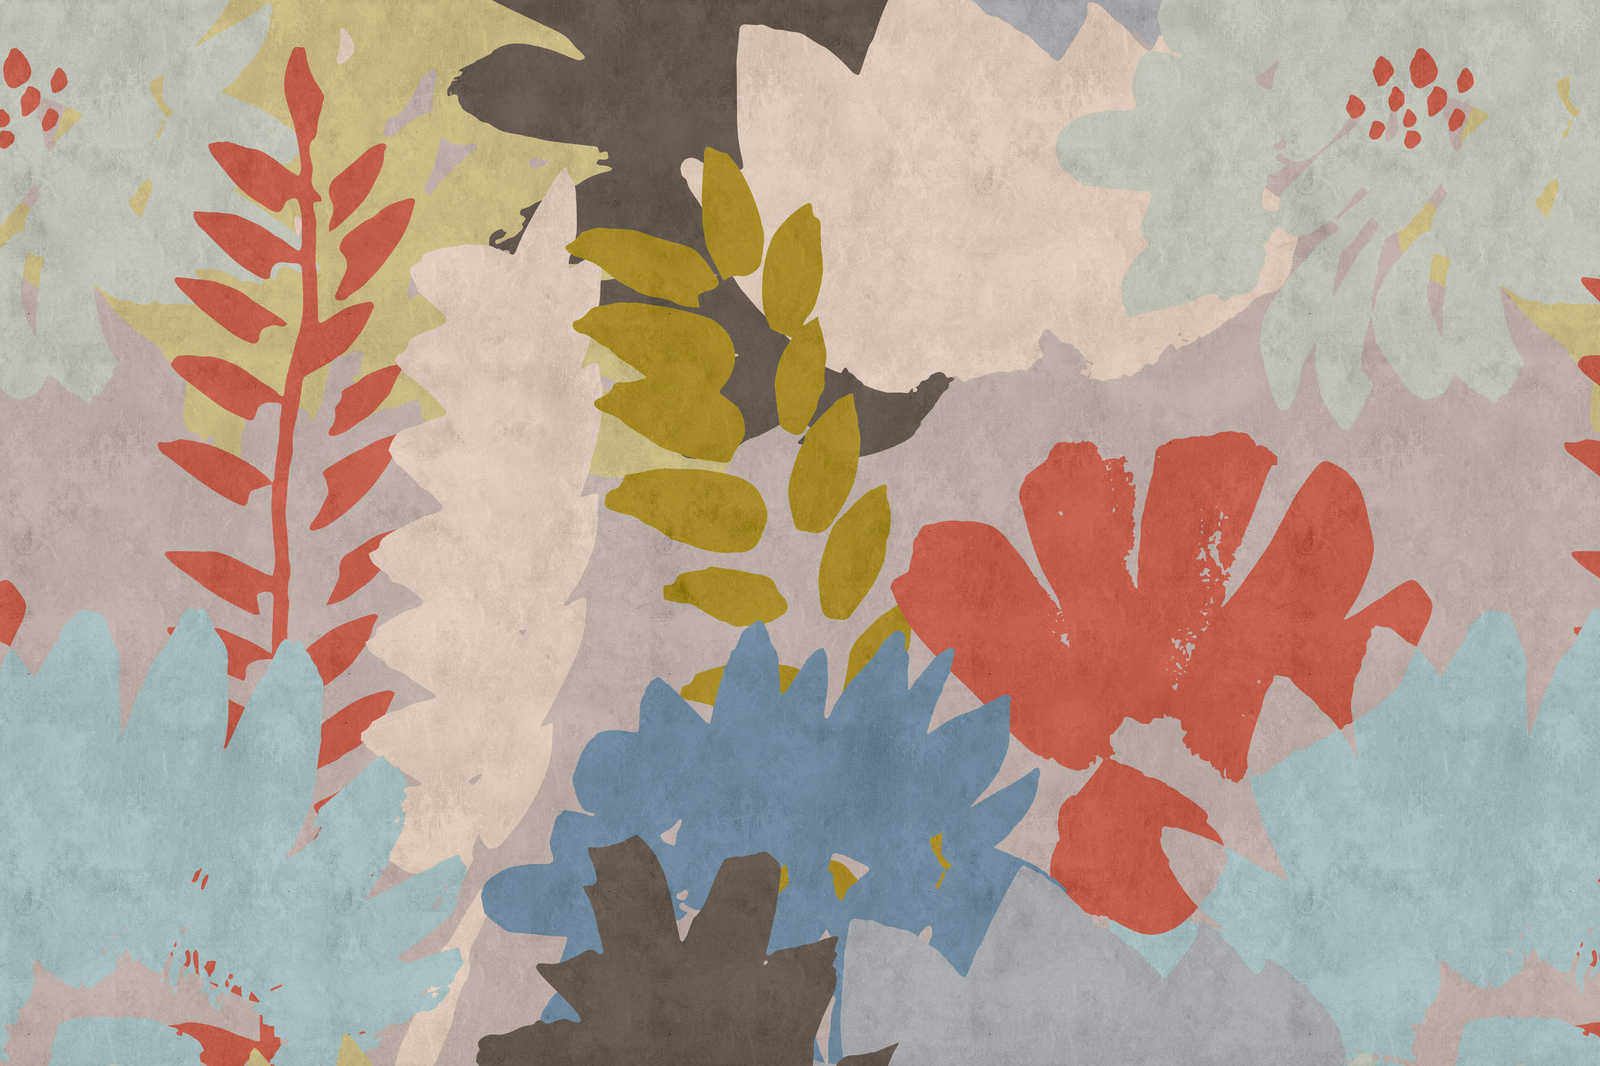             Collage floreale 3 - Quadro astratto su tela con struttura in carta assorbente e motivo a foglie - 0,90 m x 0,60 m
        